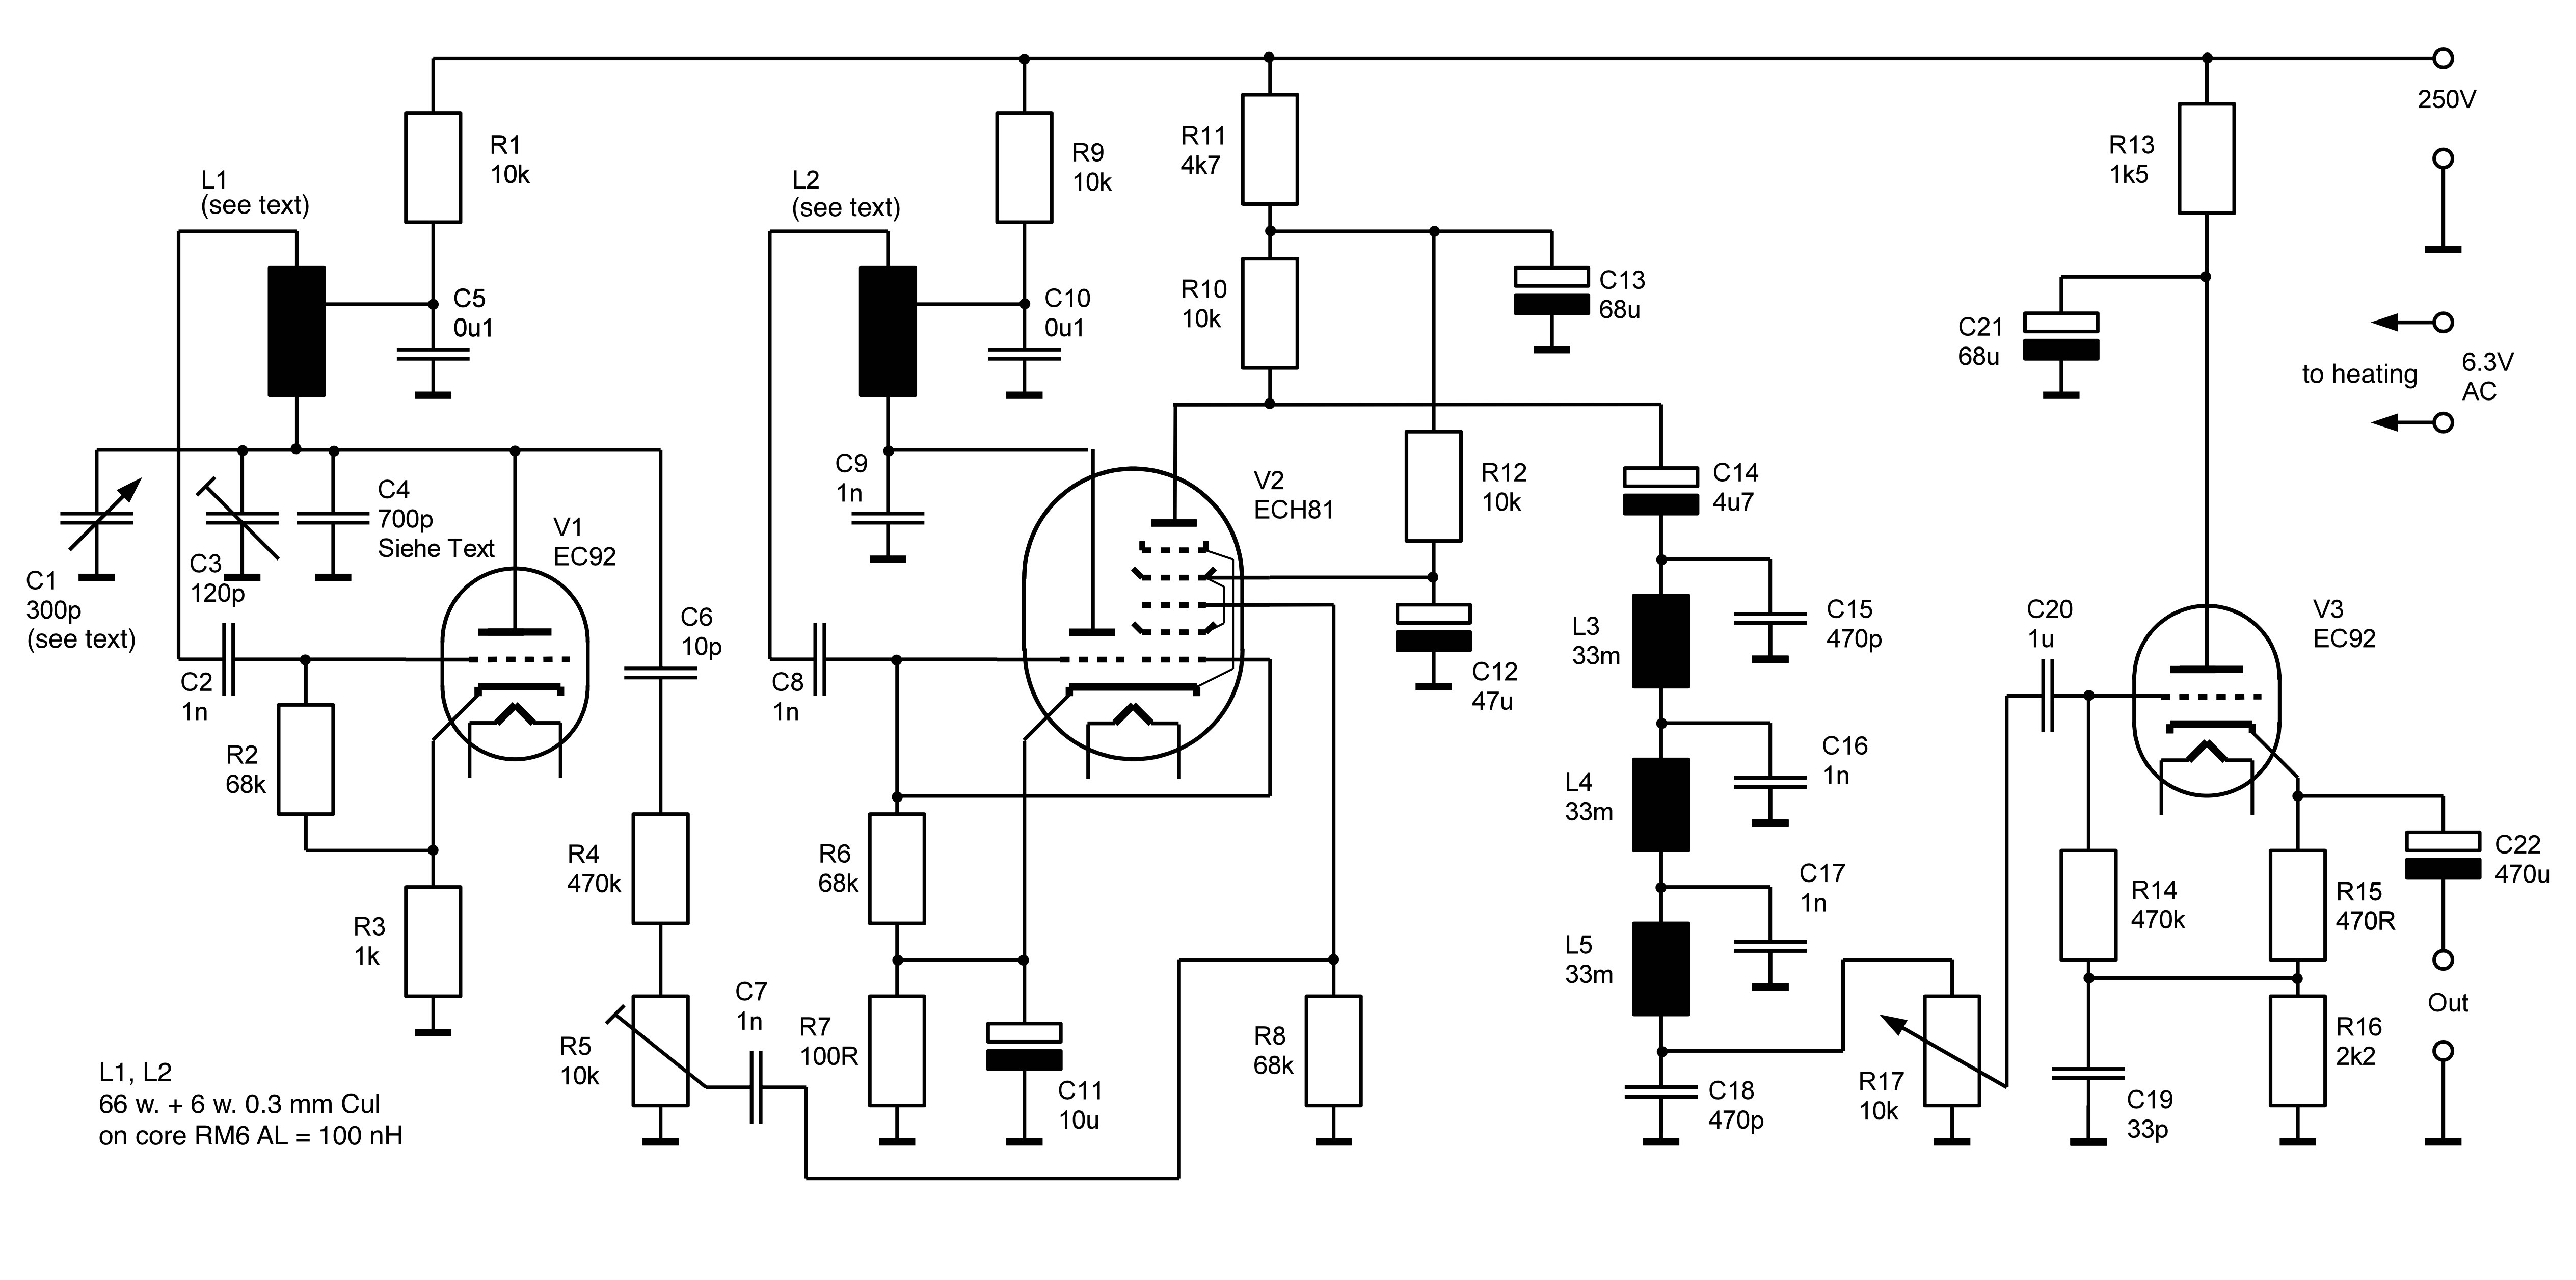 Circuit diagram of my optimized replica. 